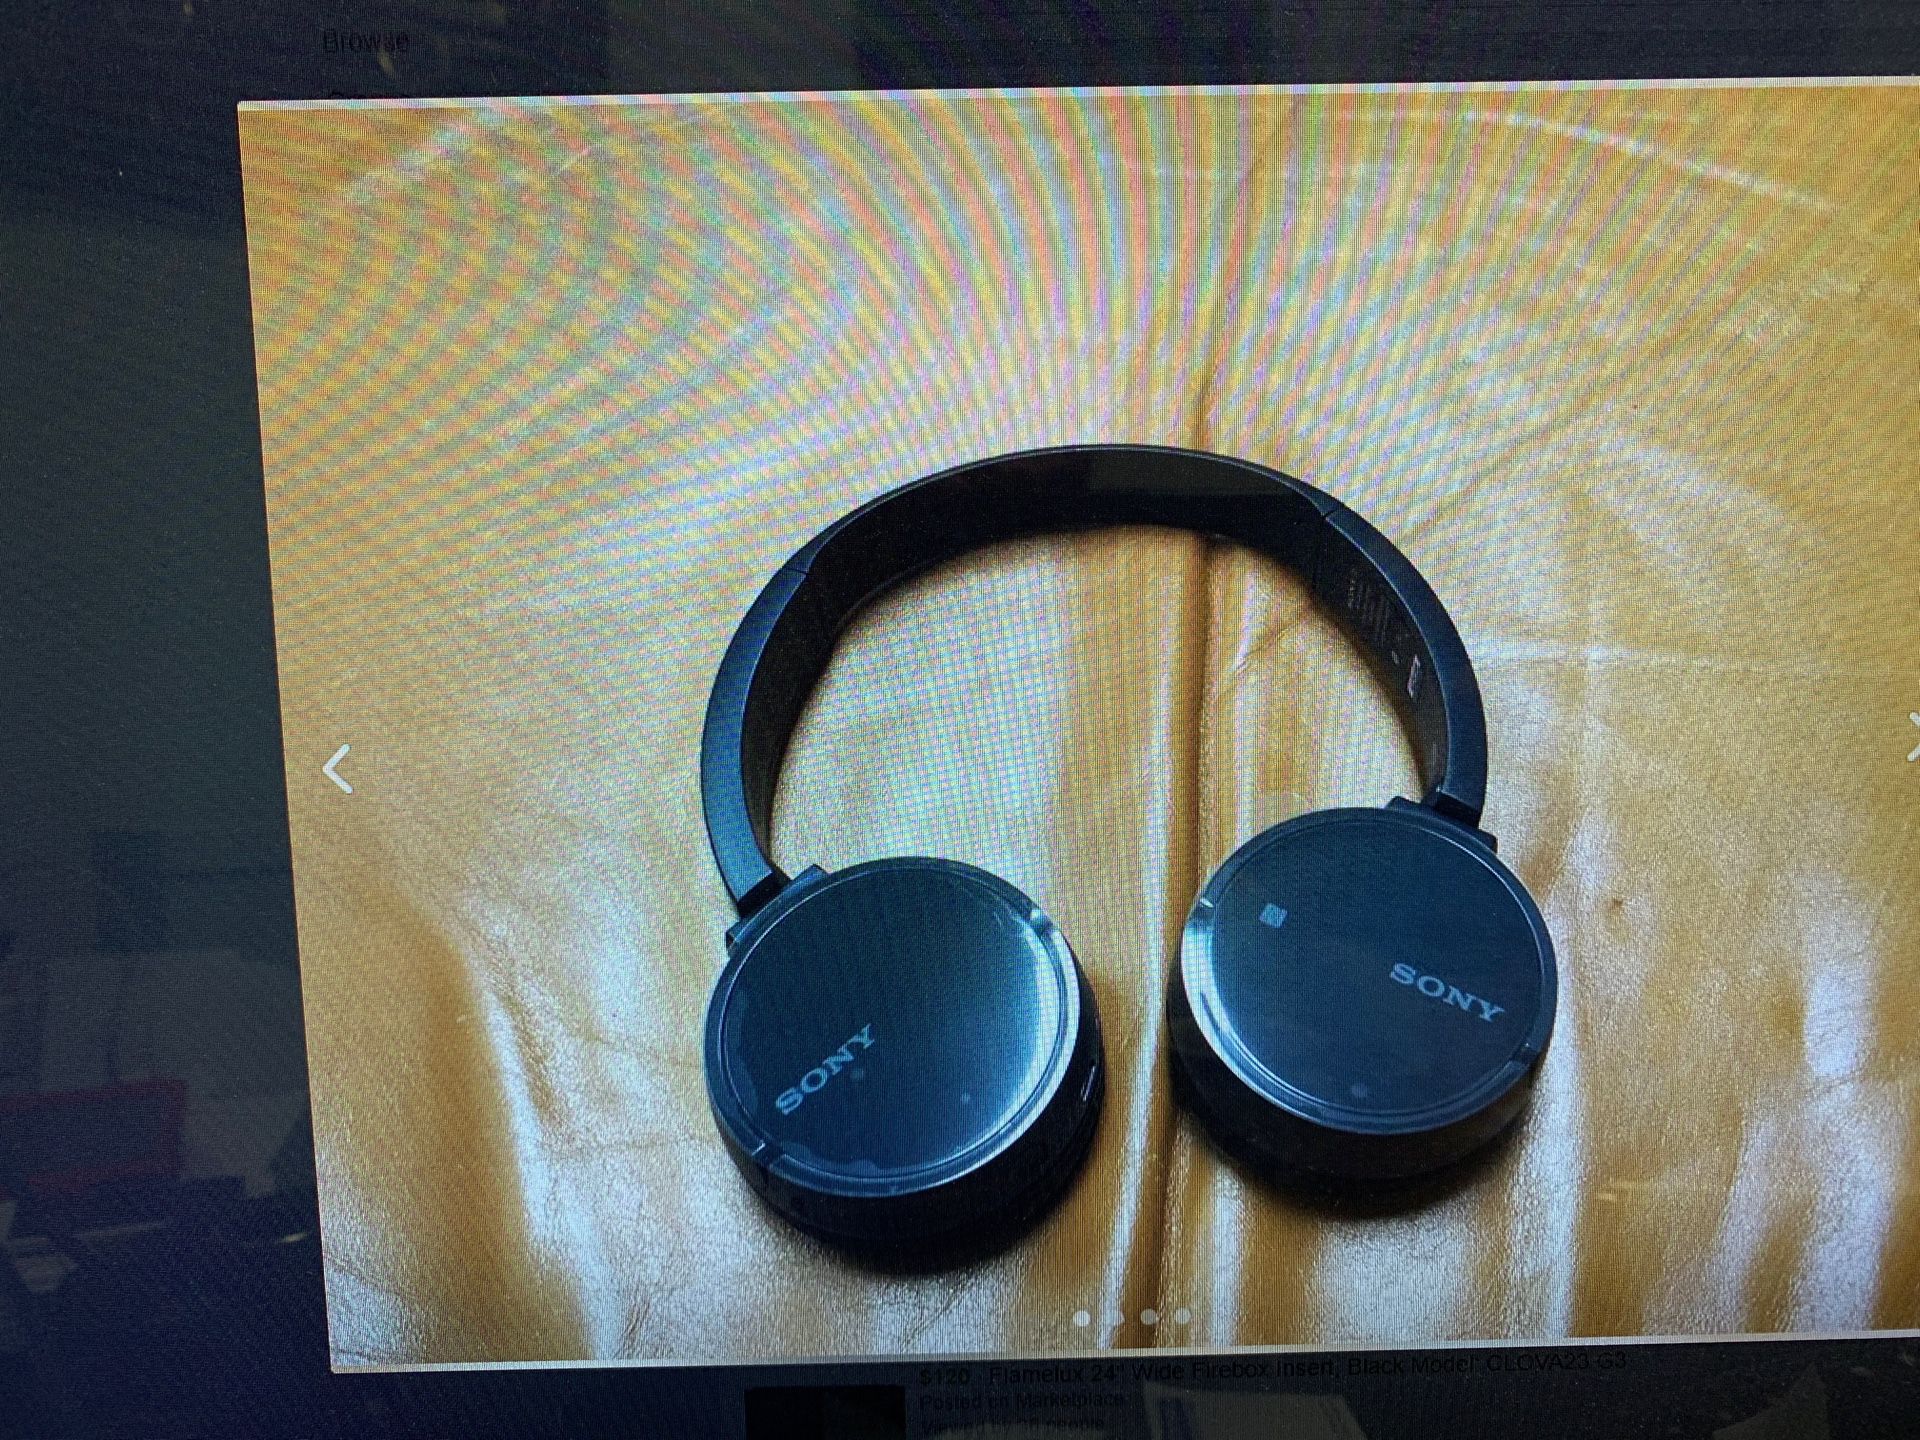 Sony - WH-CH500 Wireless On-Ear Headphones - Black